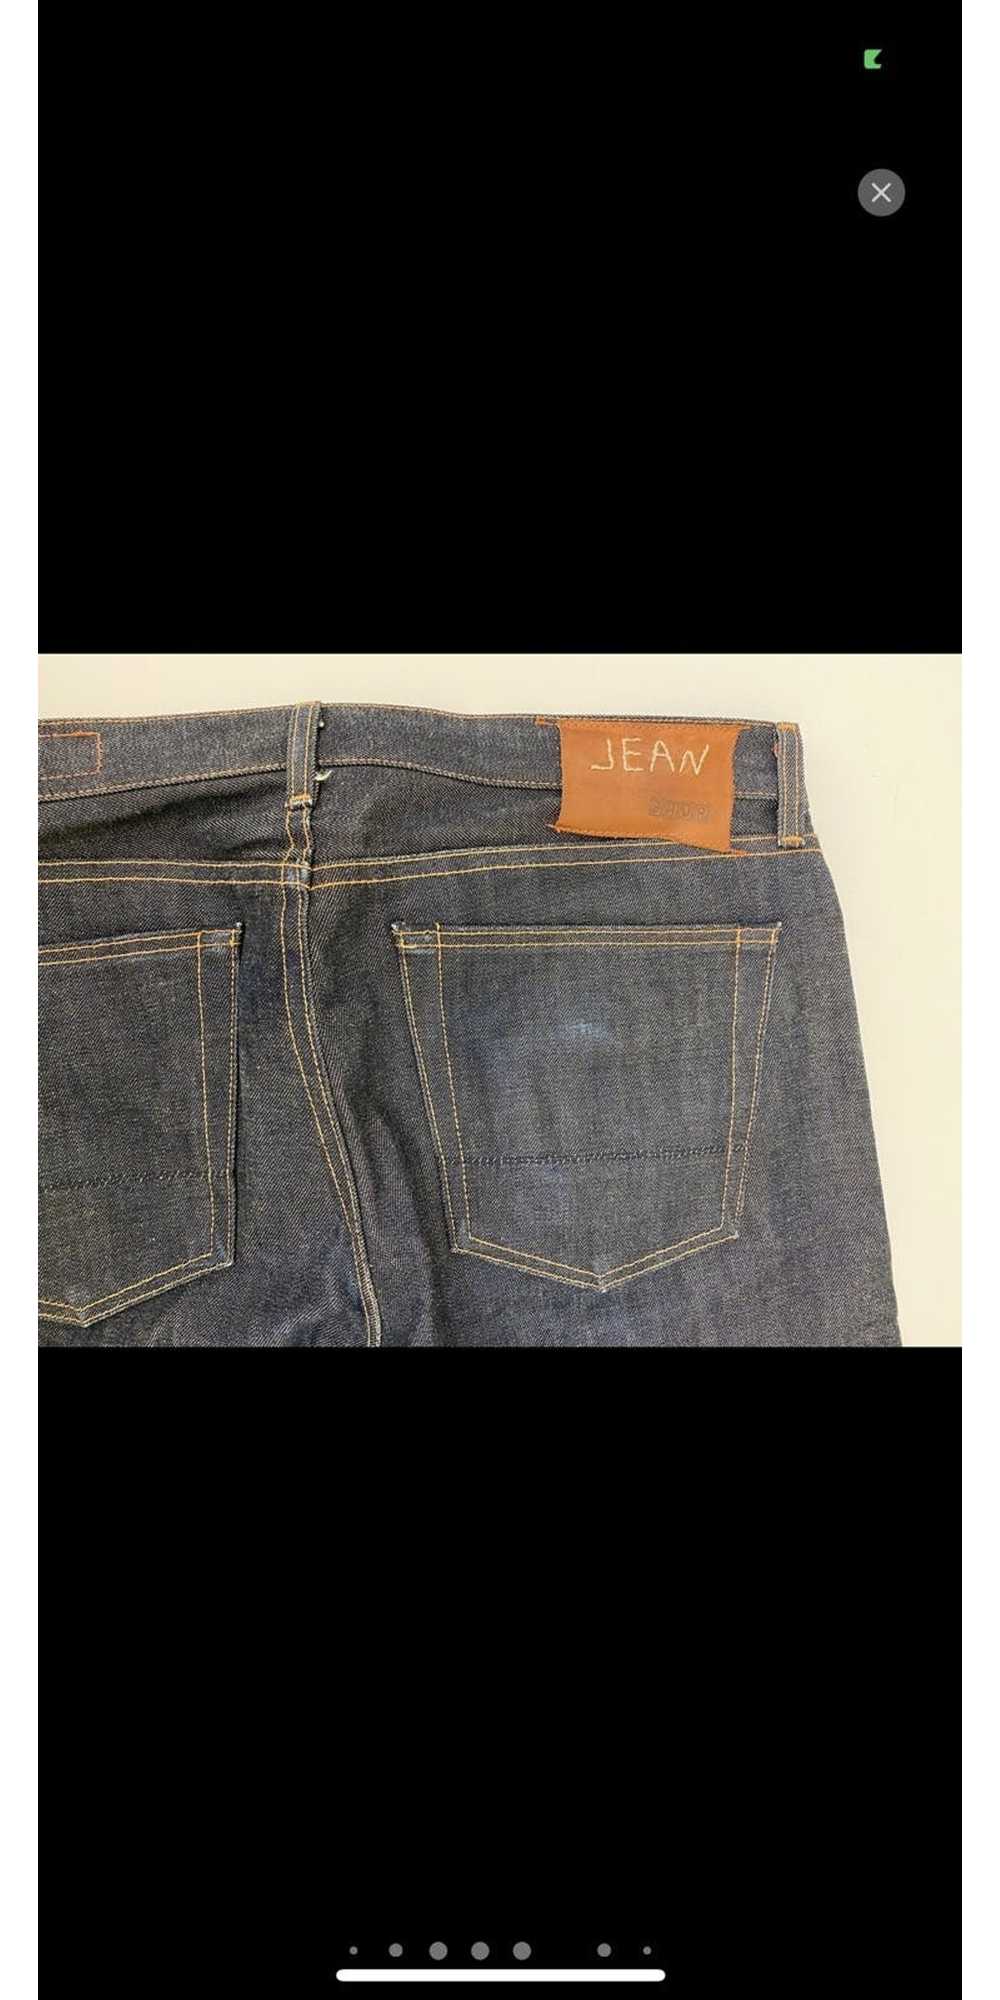 Jean Shop Jean Shop x White Oak Jeans - image 8